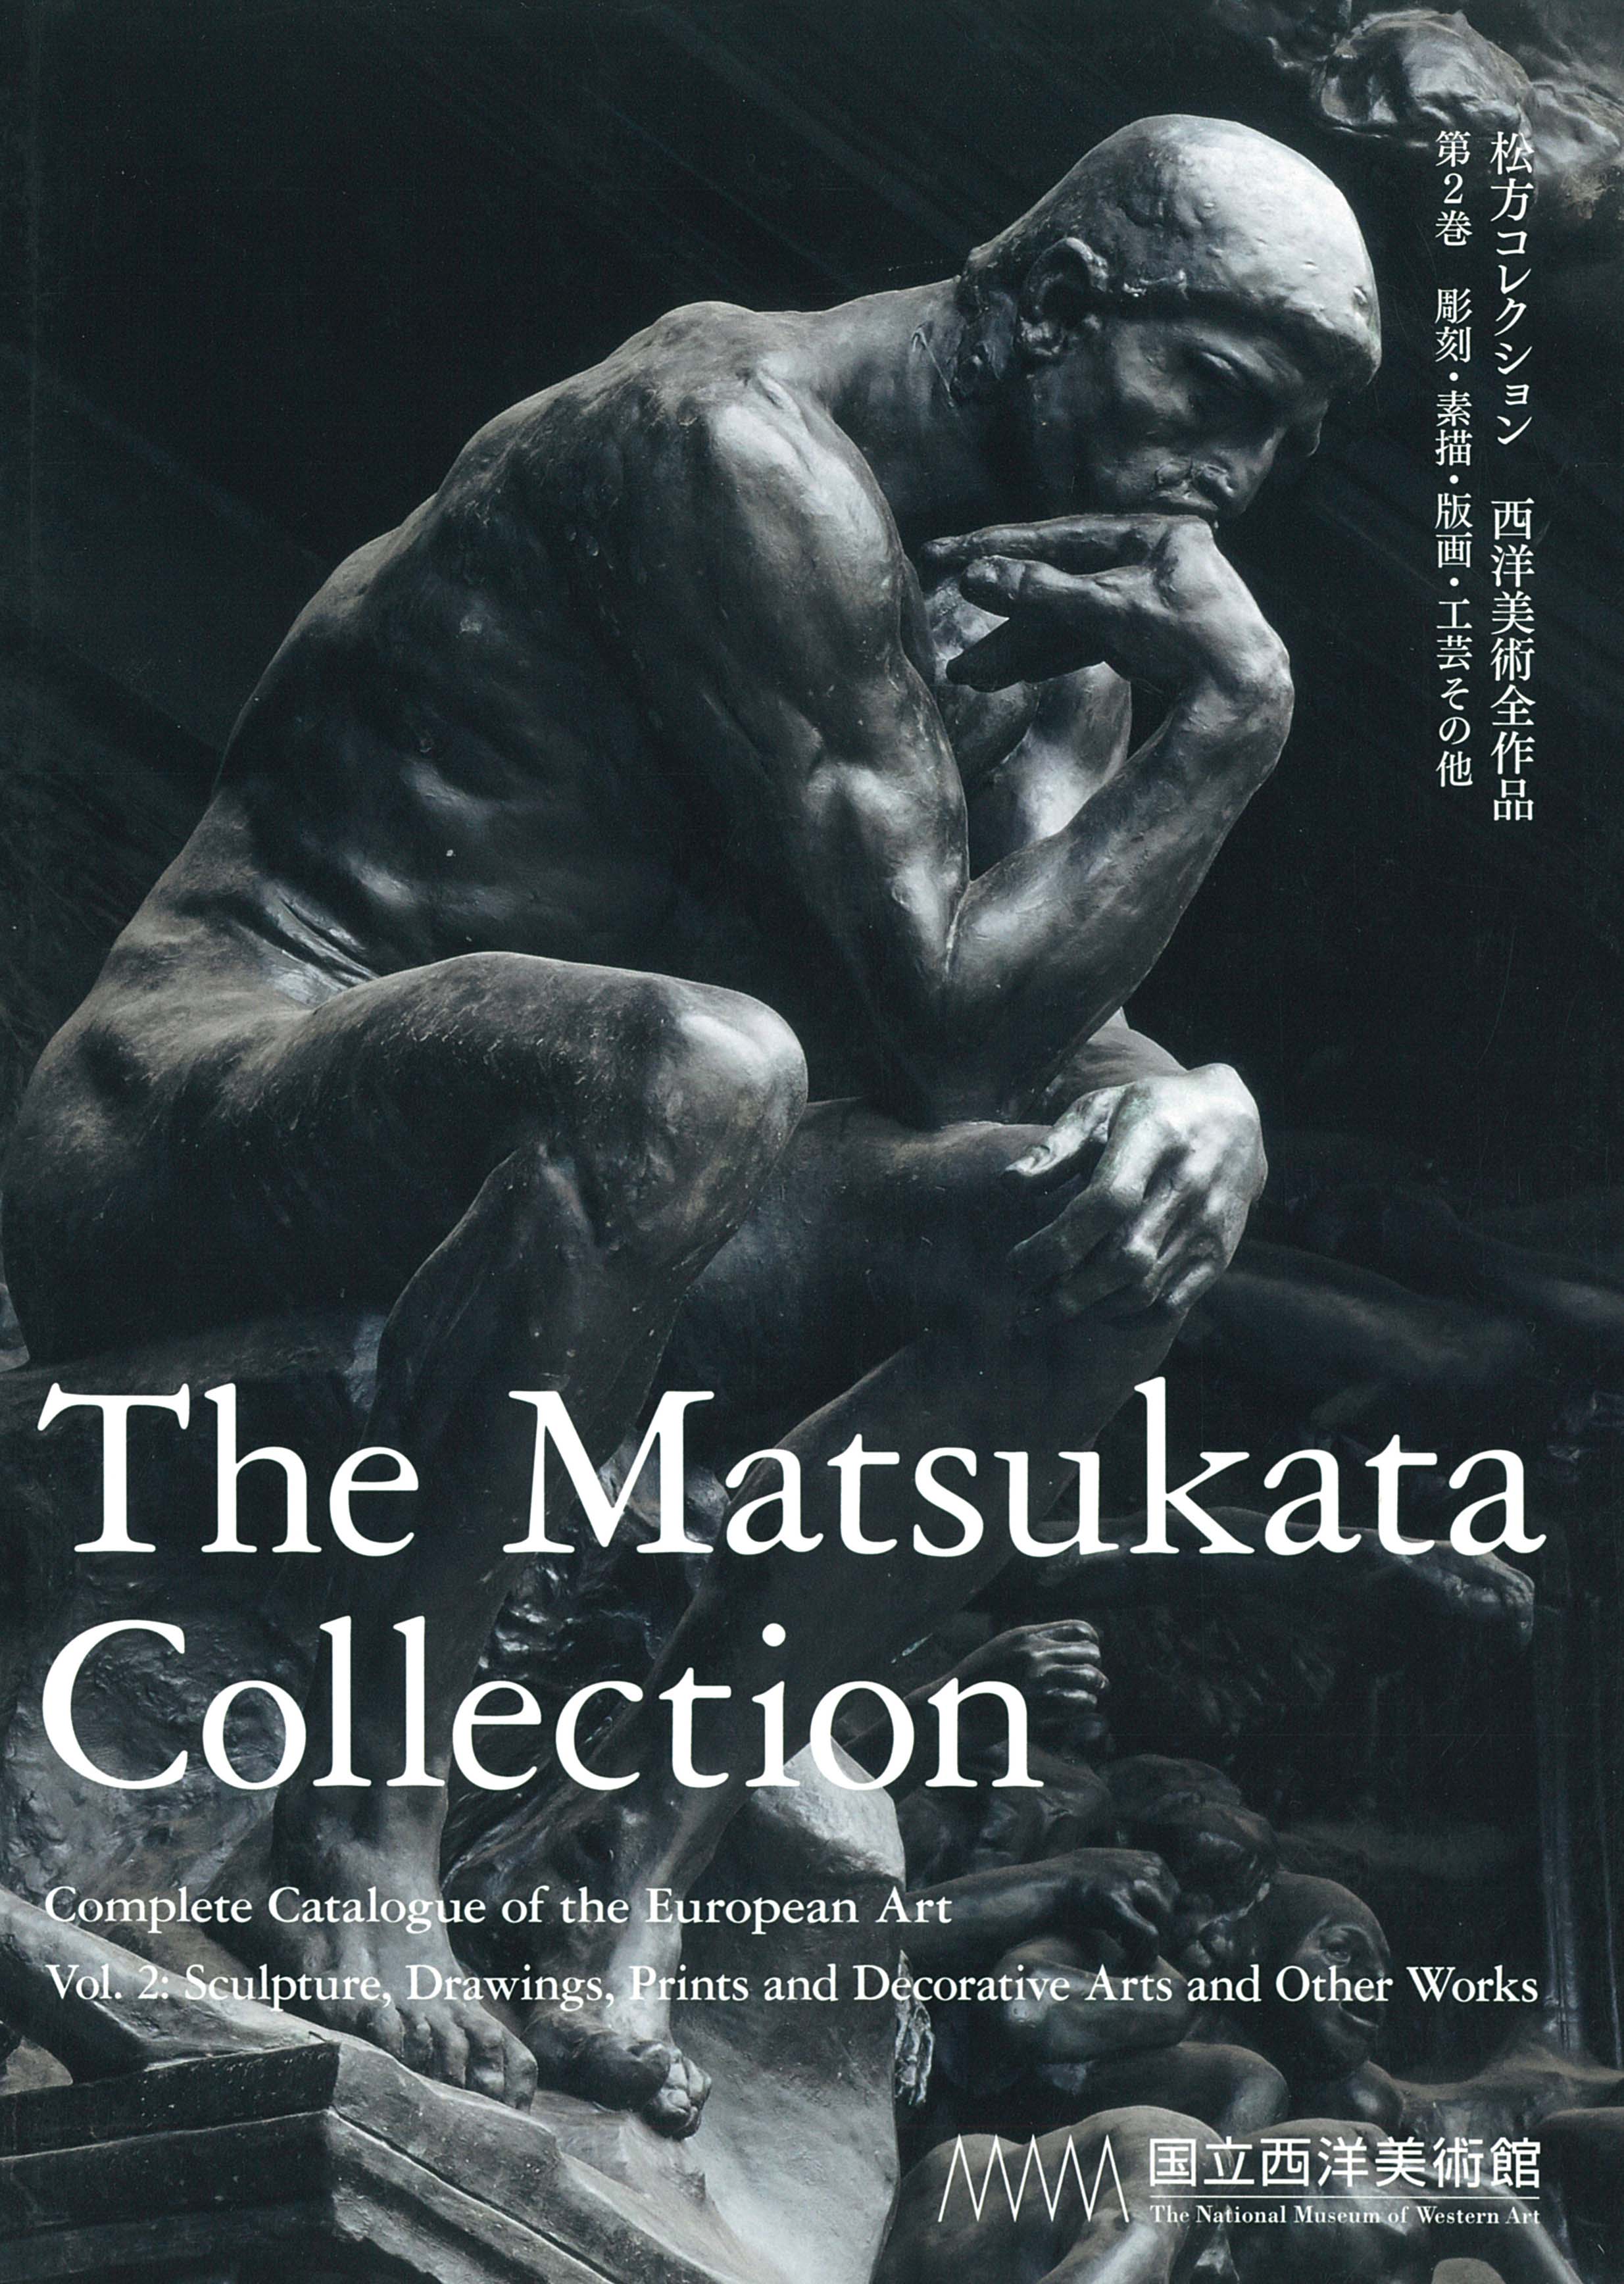 The Matsukata Collection